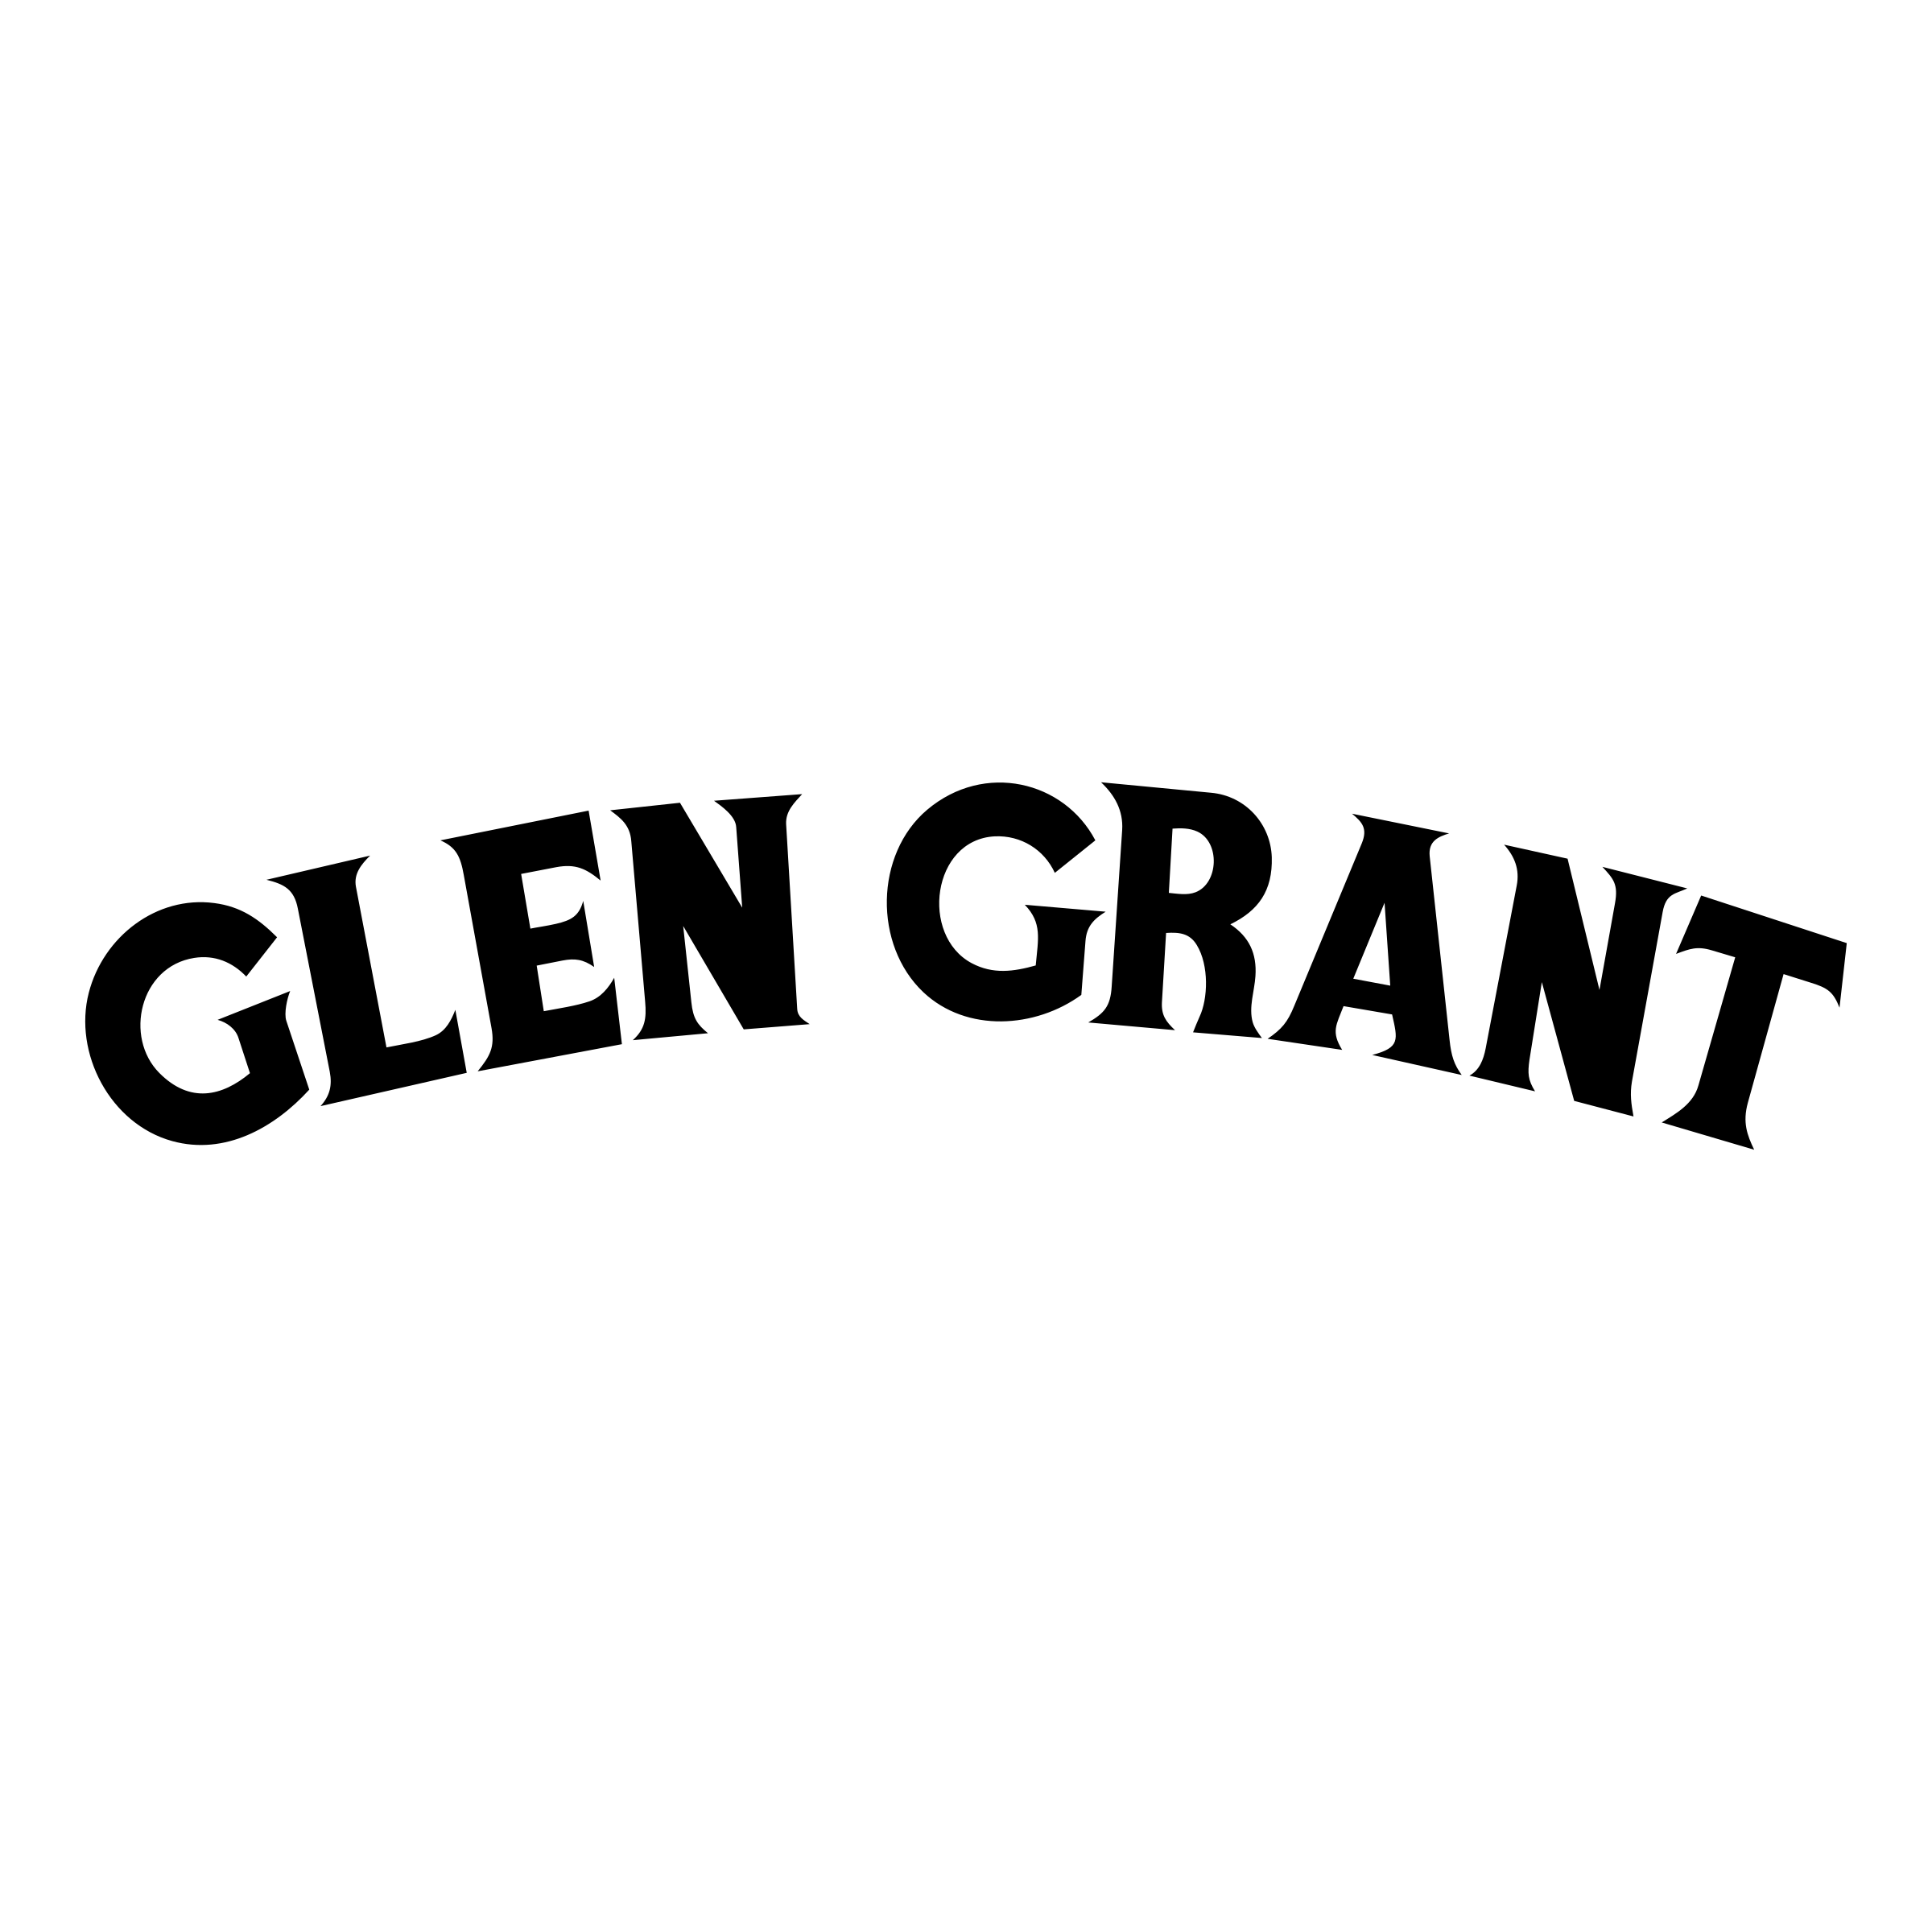 Glen Logo - Glen Grant Logo PNG Transparent & SVG Vector